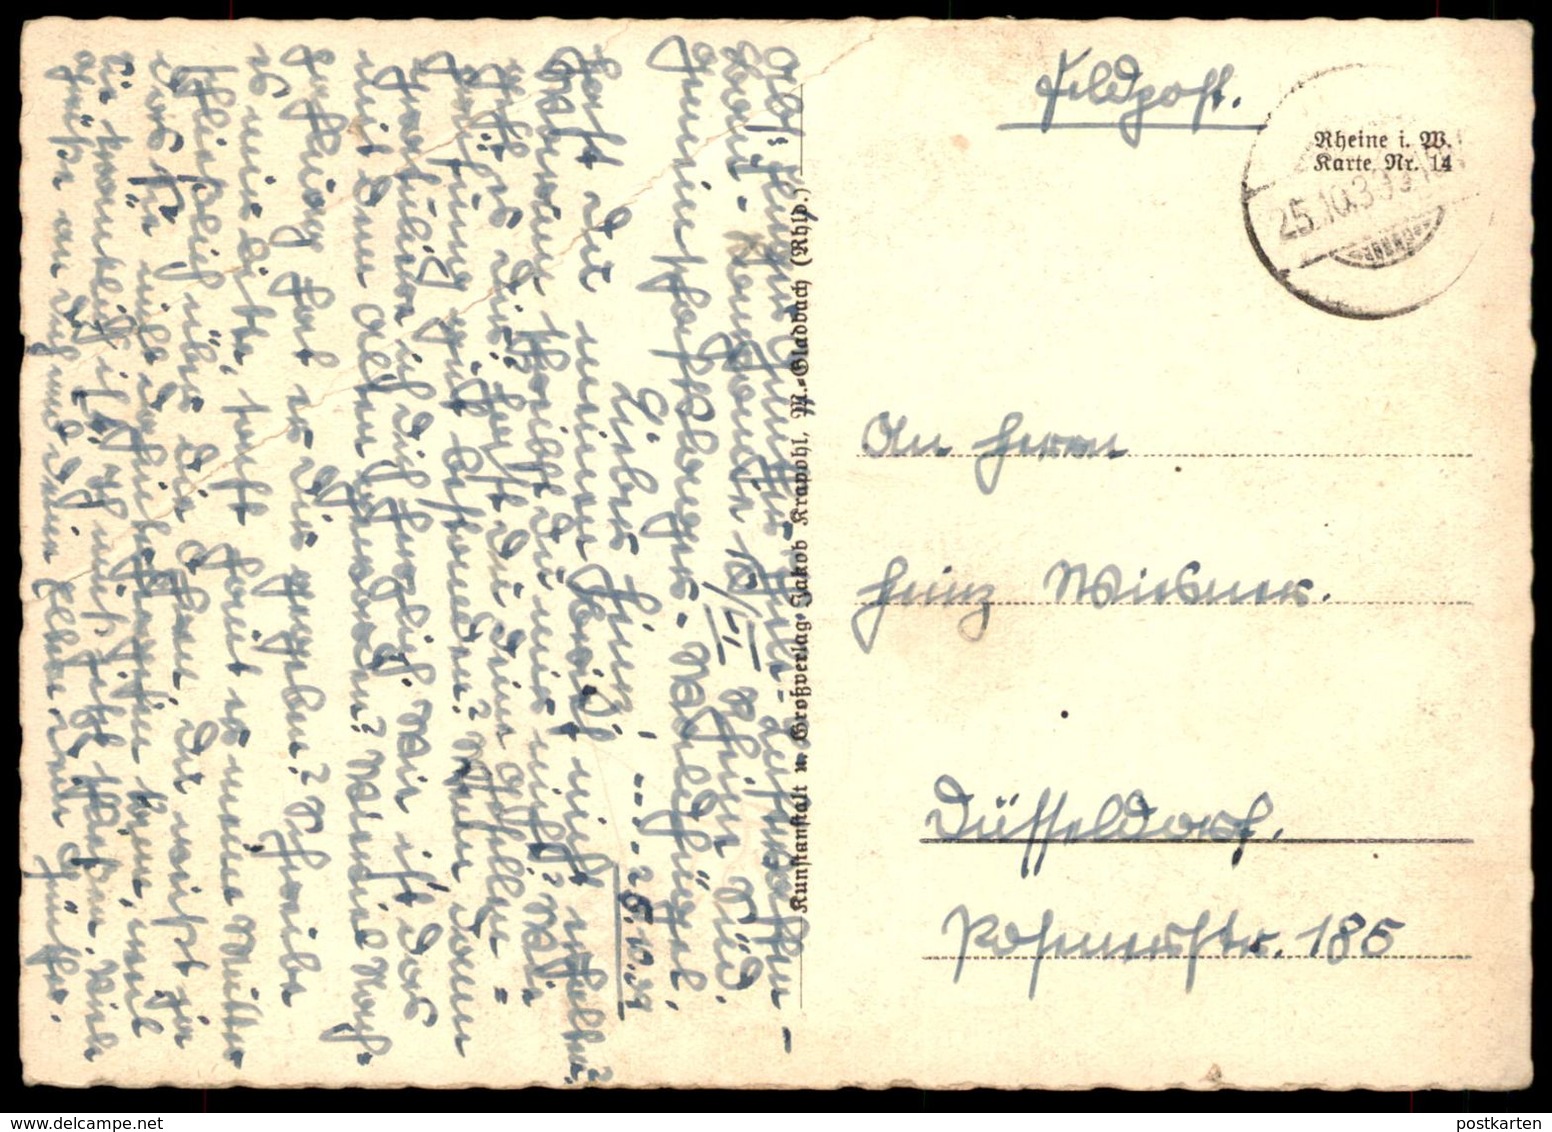 ALTE POSTKARTE GRUSS AUS RHEINE FELDPOST 1939 EHRENMAL KAFFEE GESCHÄFT FENGEN... Ansichtskarte AK Cpa Postcard - Rheine